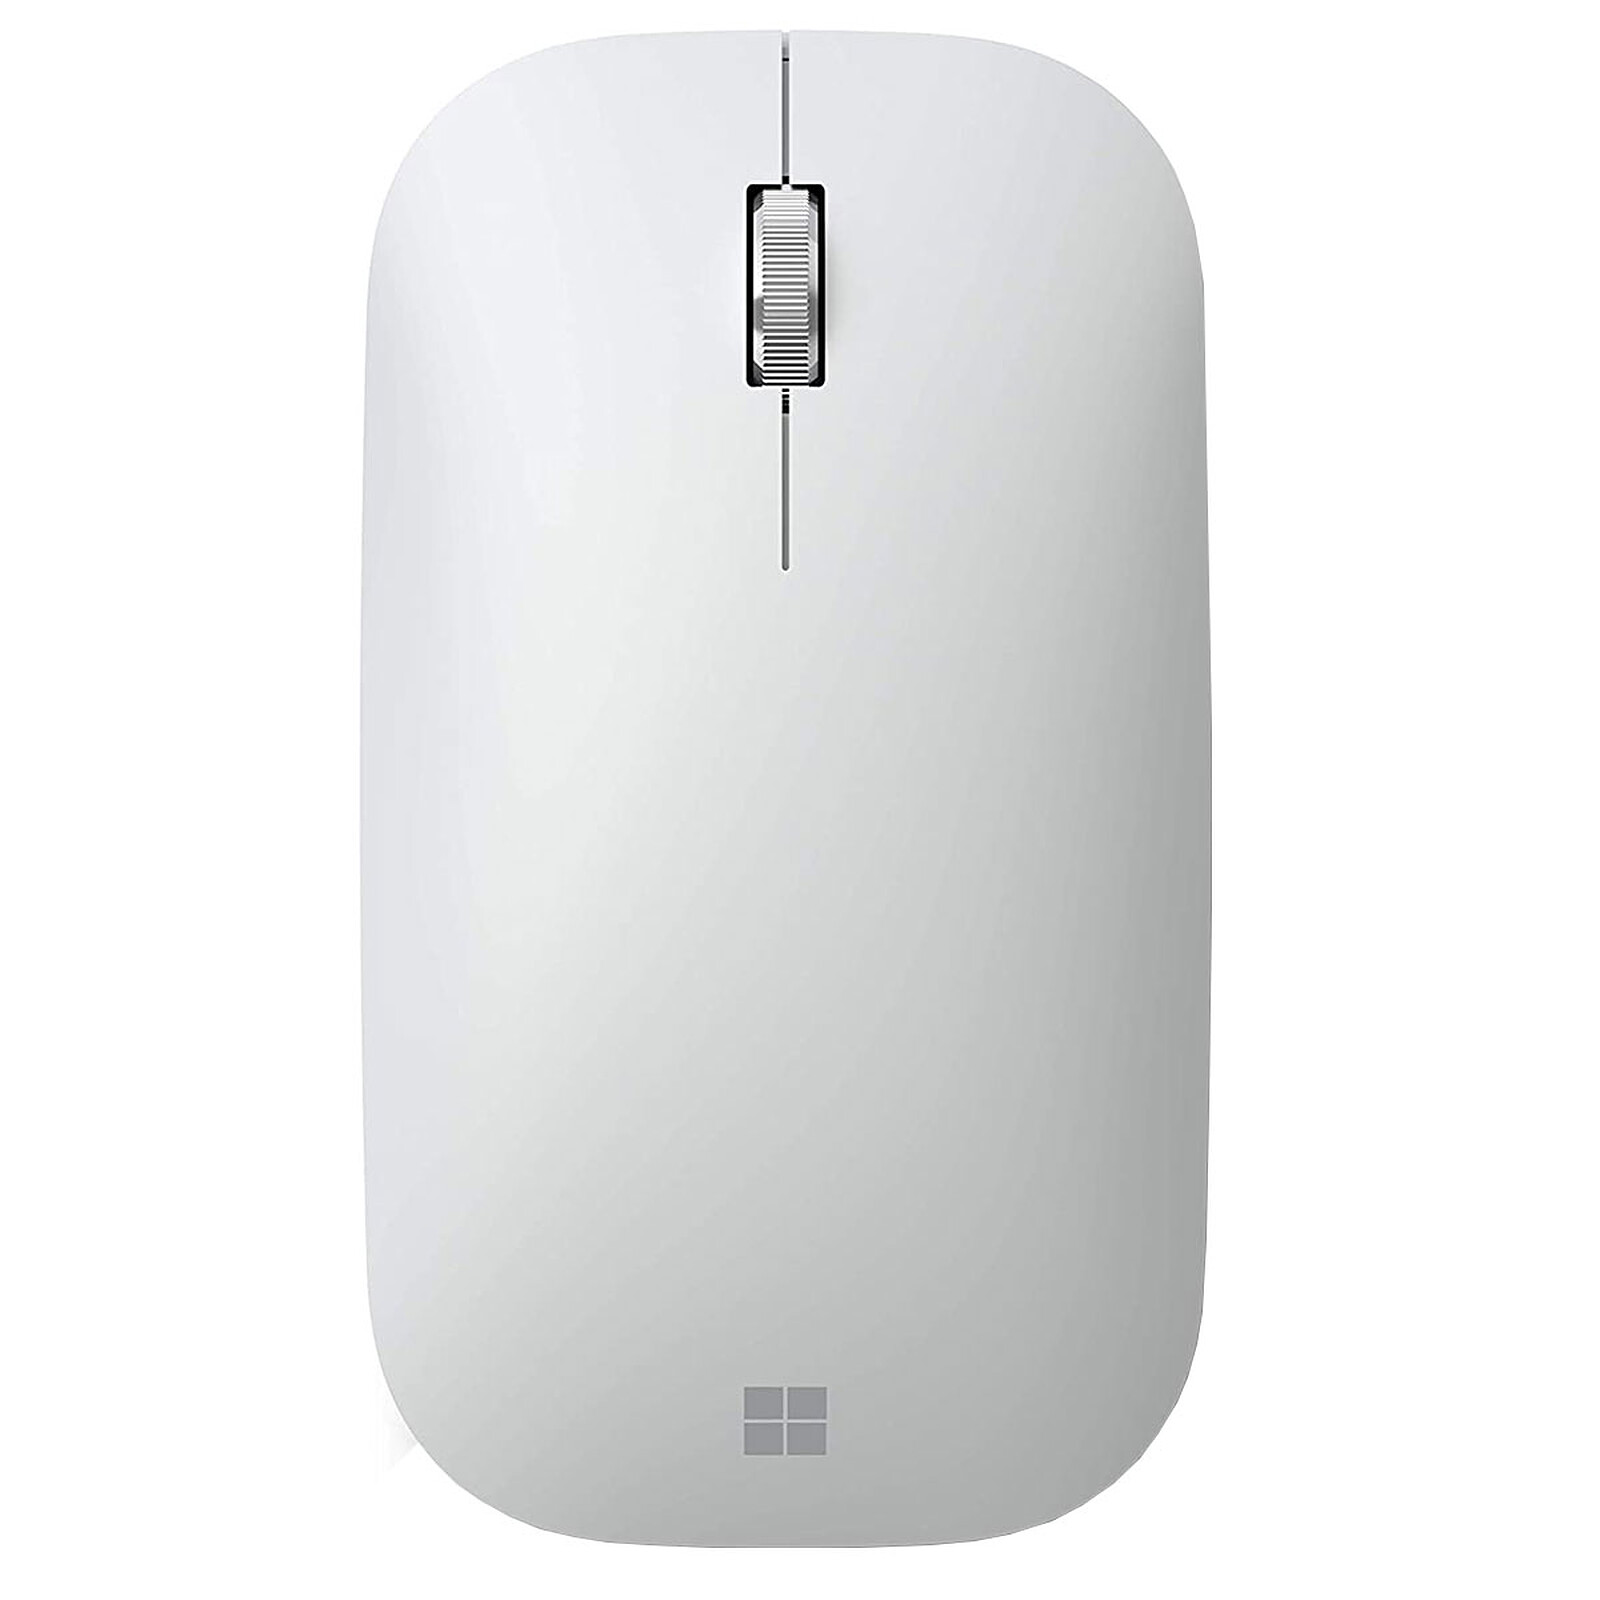 Microsoft Modern Mouse Argent - Souris PC - Garantie 3 ans LDLC